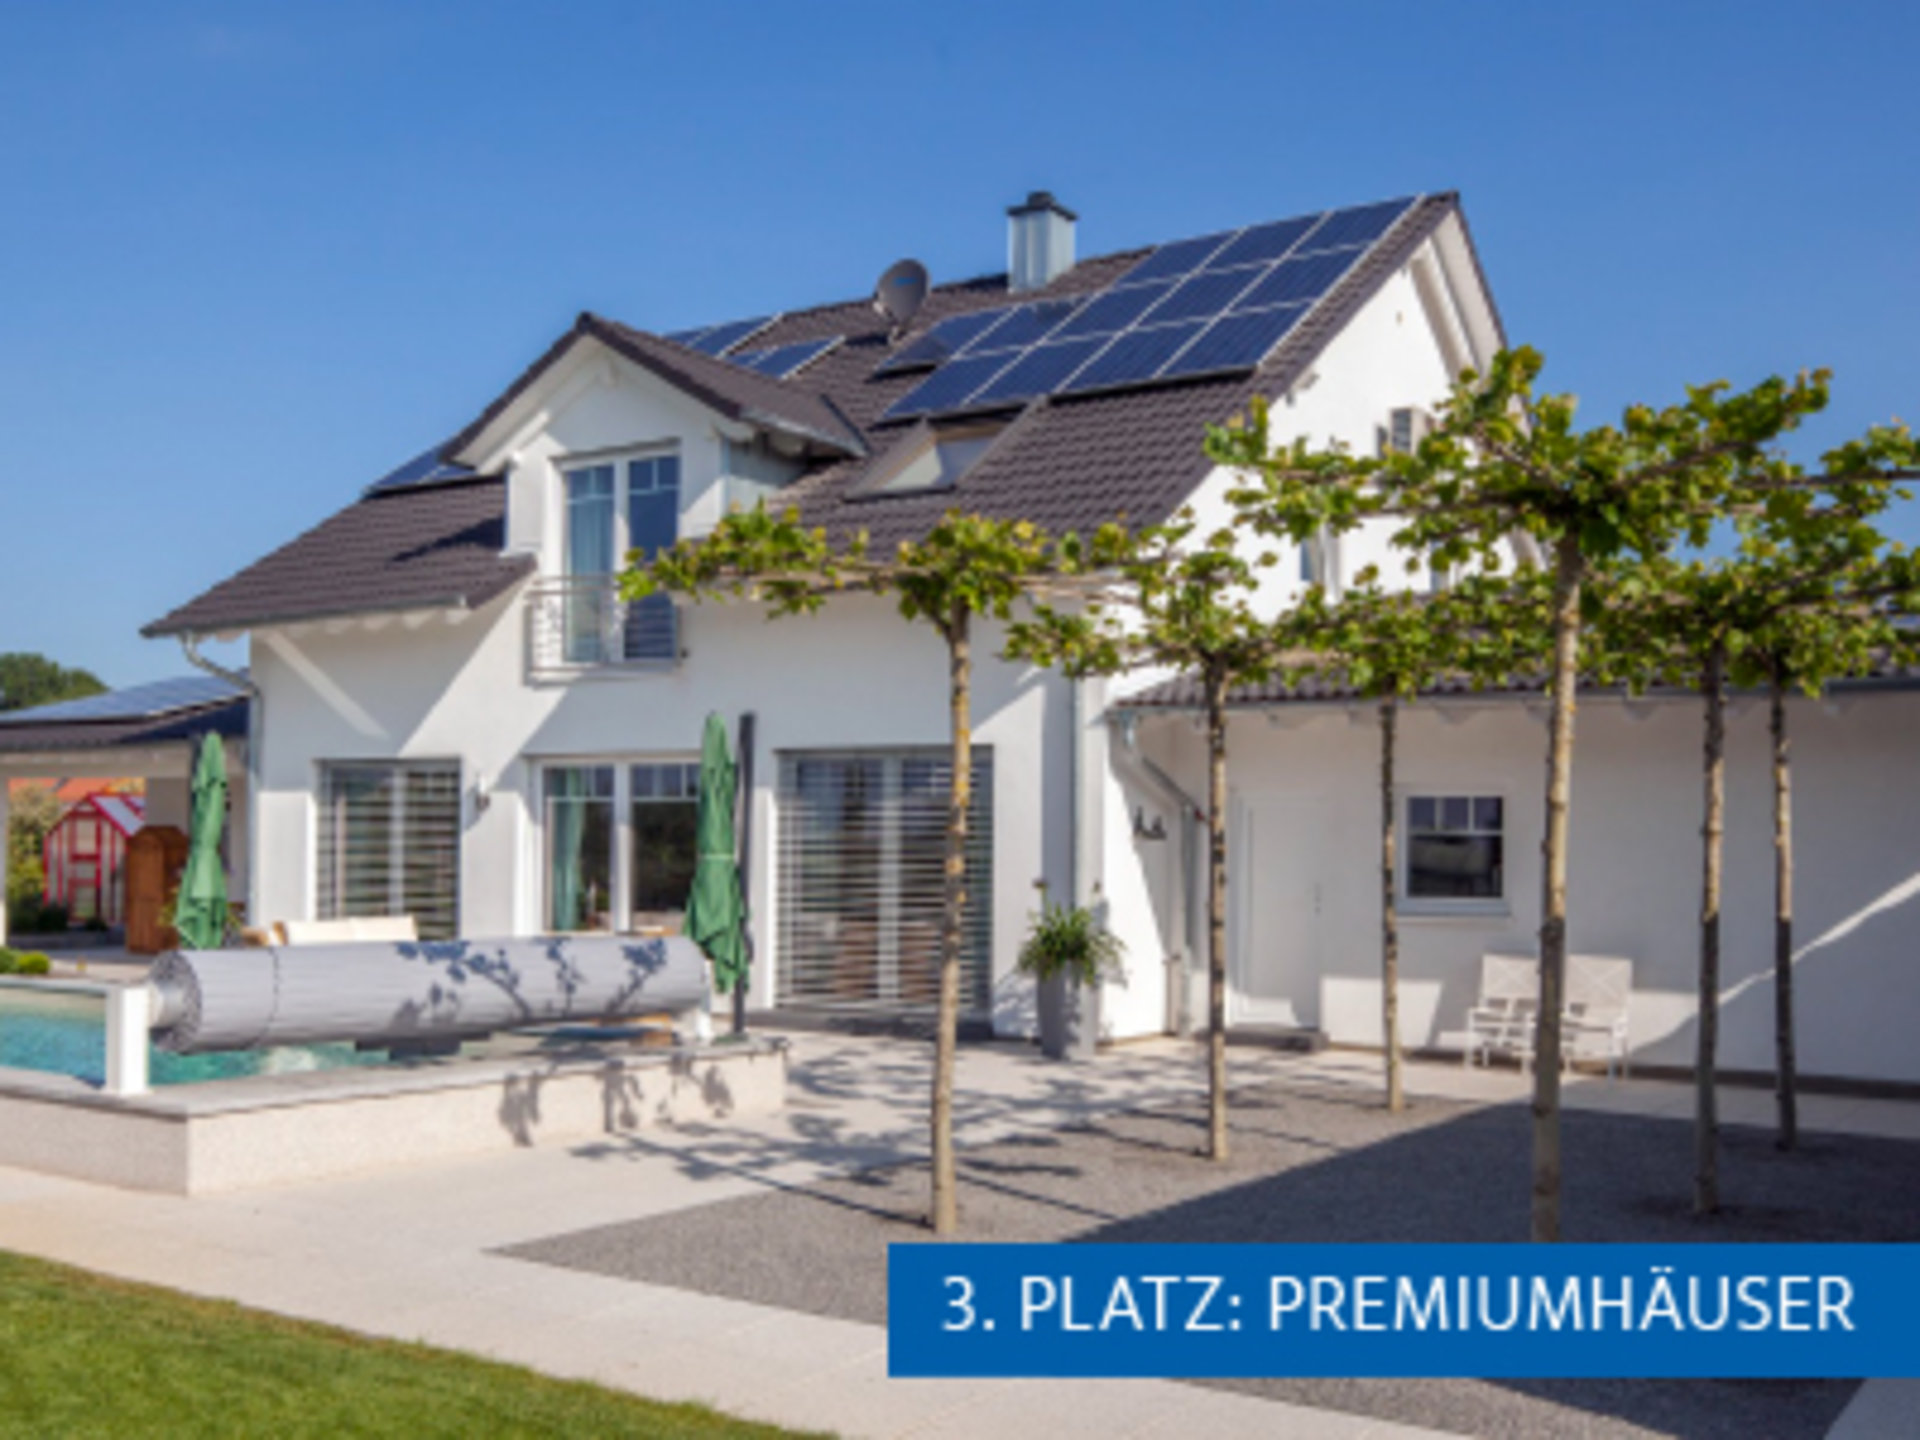 Einfamilienhaus Ungermann holt den 3. Platz beim Hausbau Design Award 2018 in der Kategorie "Premiumhäuser" (Foto: © BAUMEISTER-HAUS)